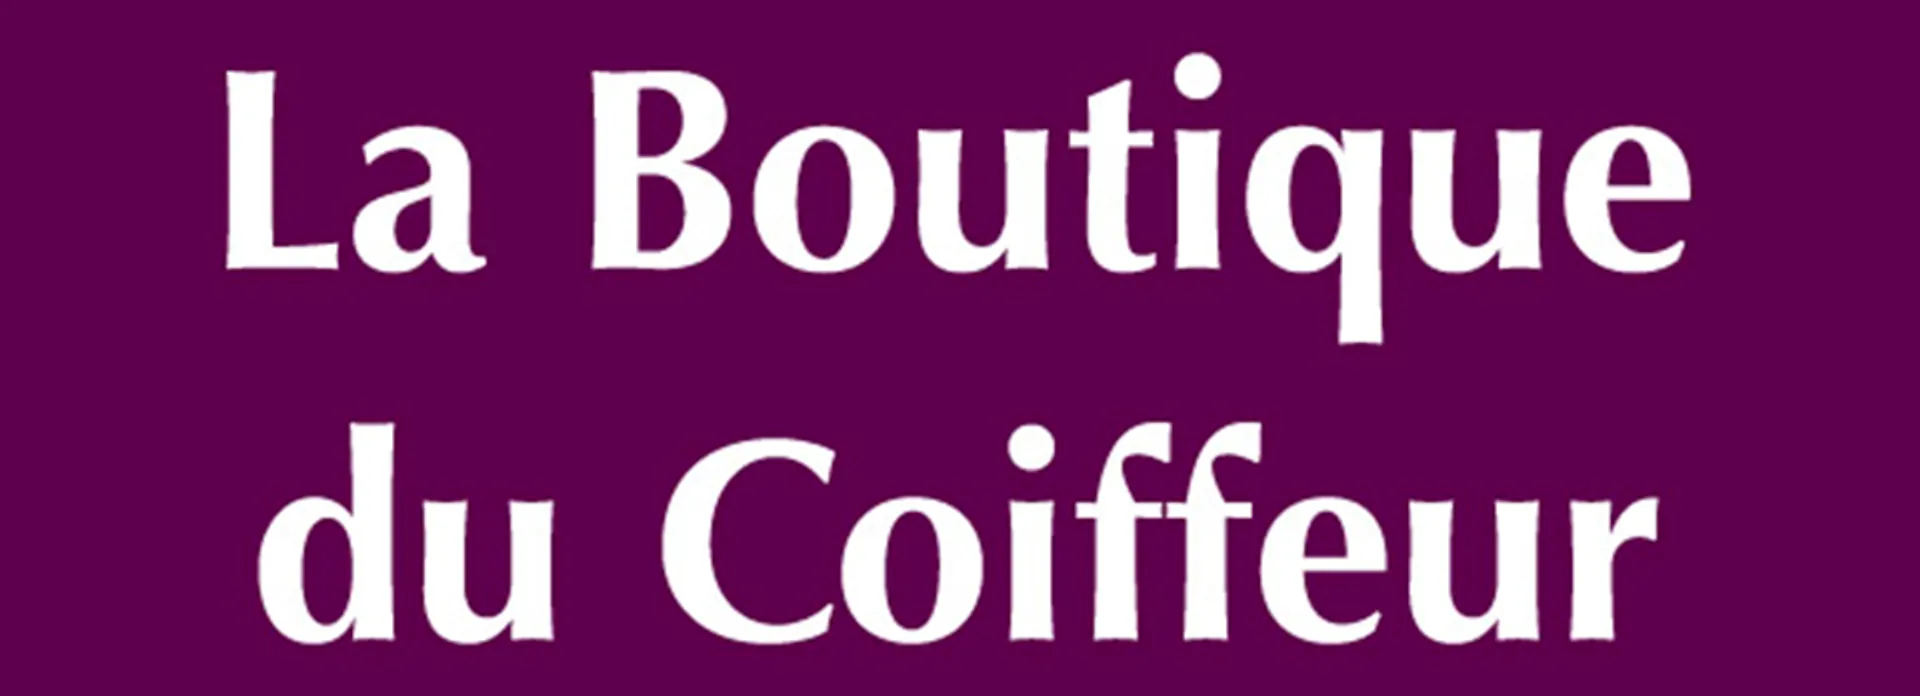 LA BOUTIQUE DU COIFFEUR logo du catalogue